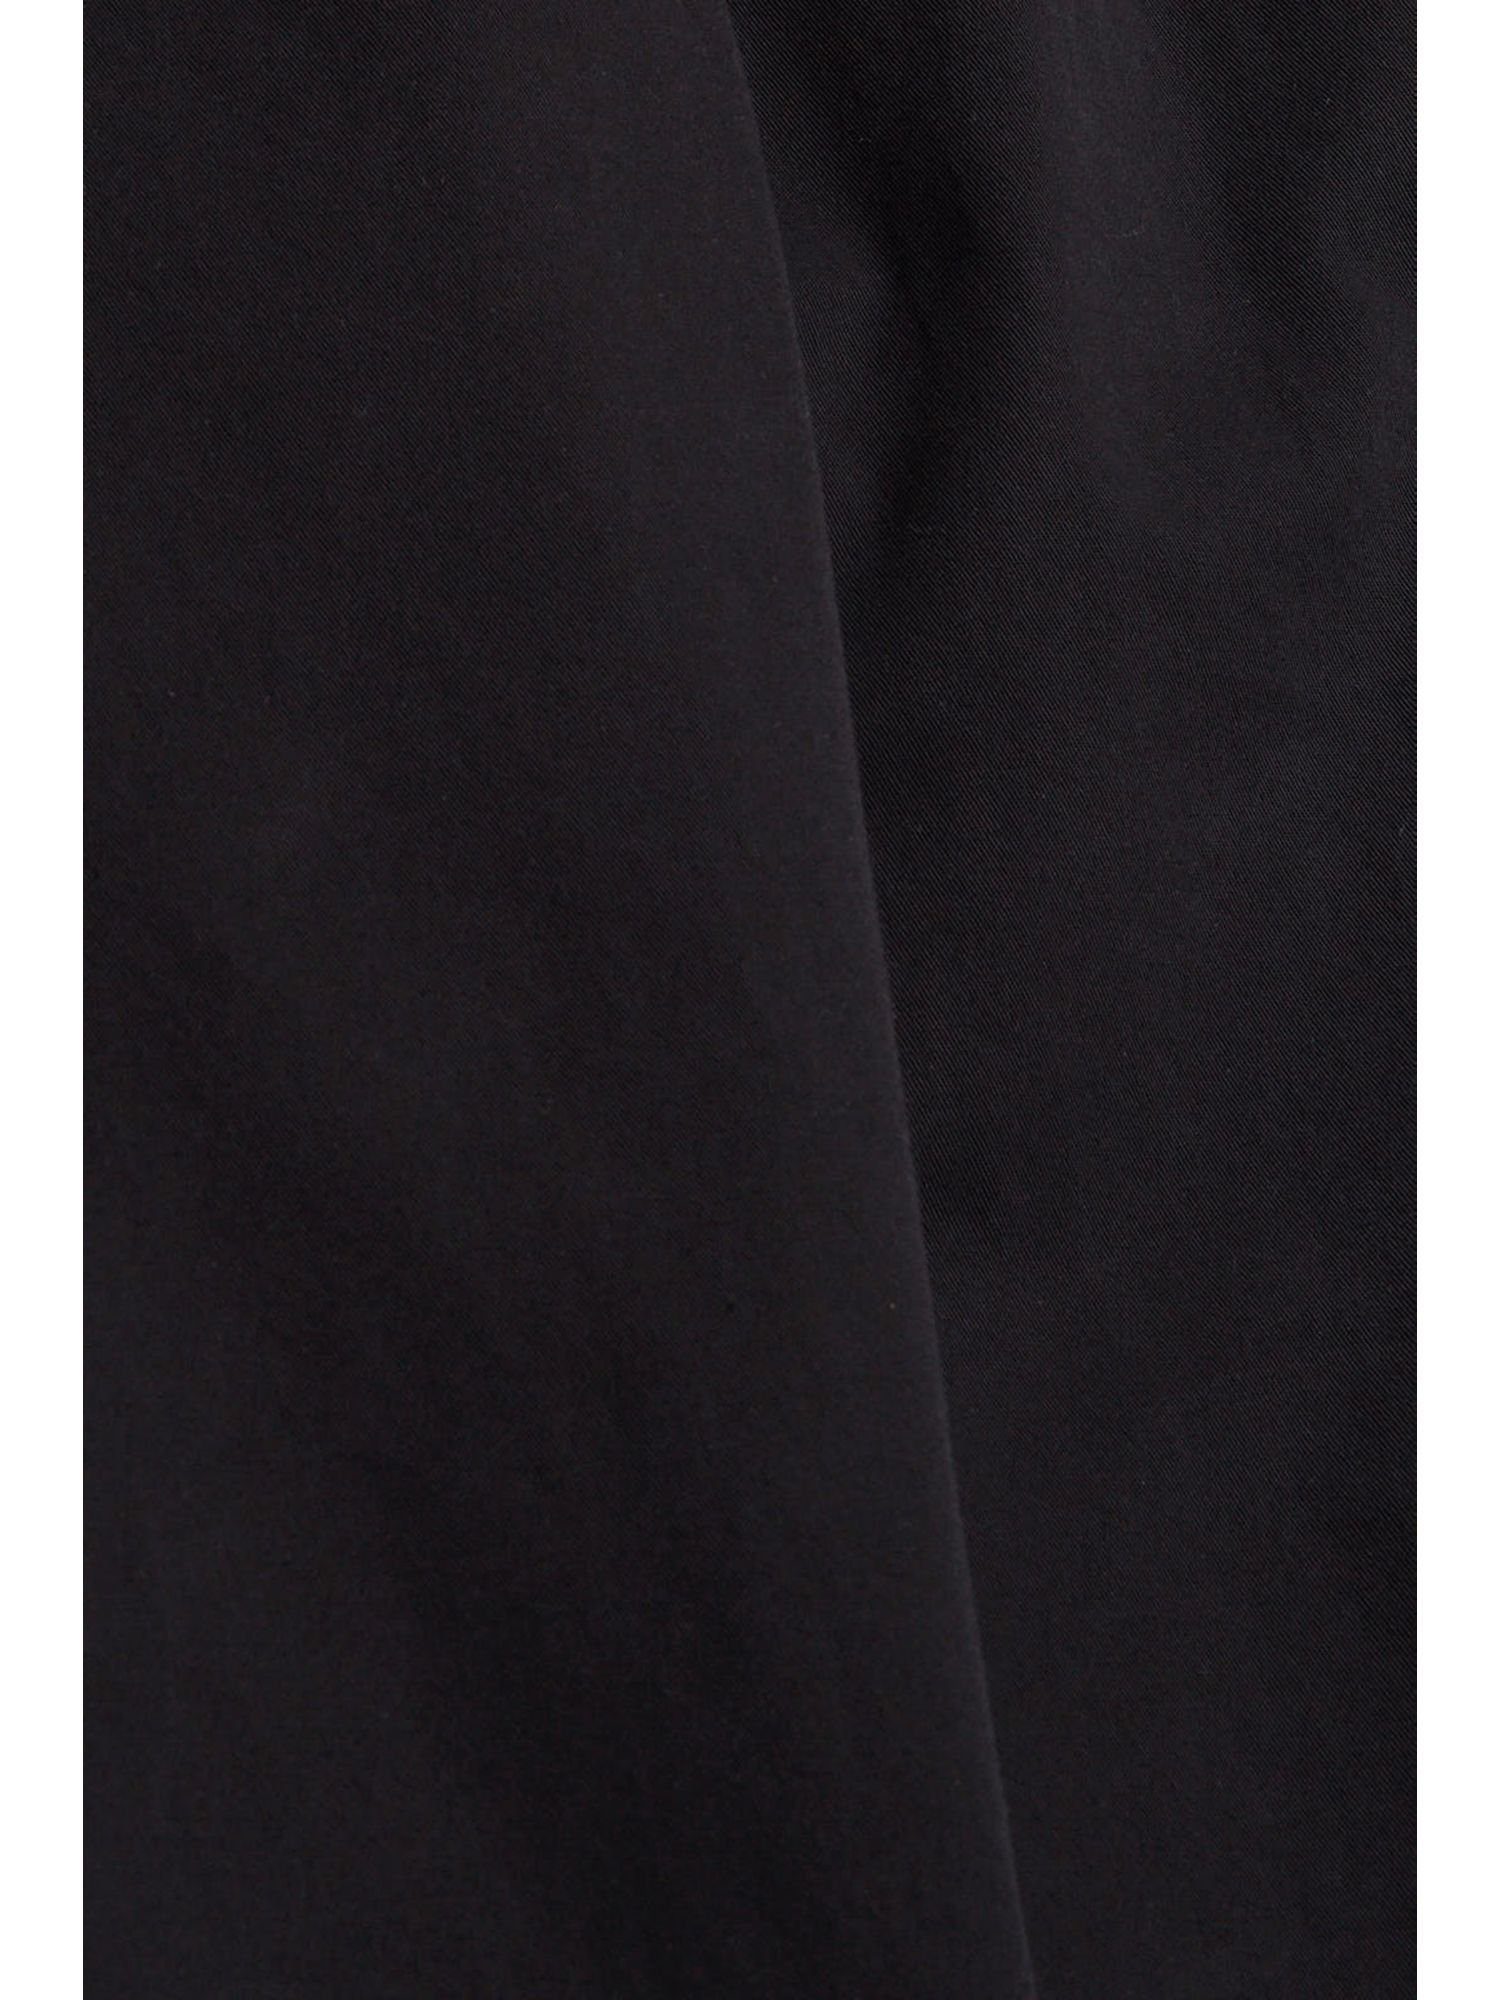 Chinohose by mit Gürtel, Bundfaltenhose Pima-Baumwolle Esprit BLACK edc